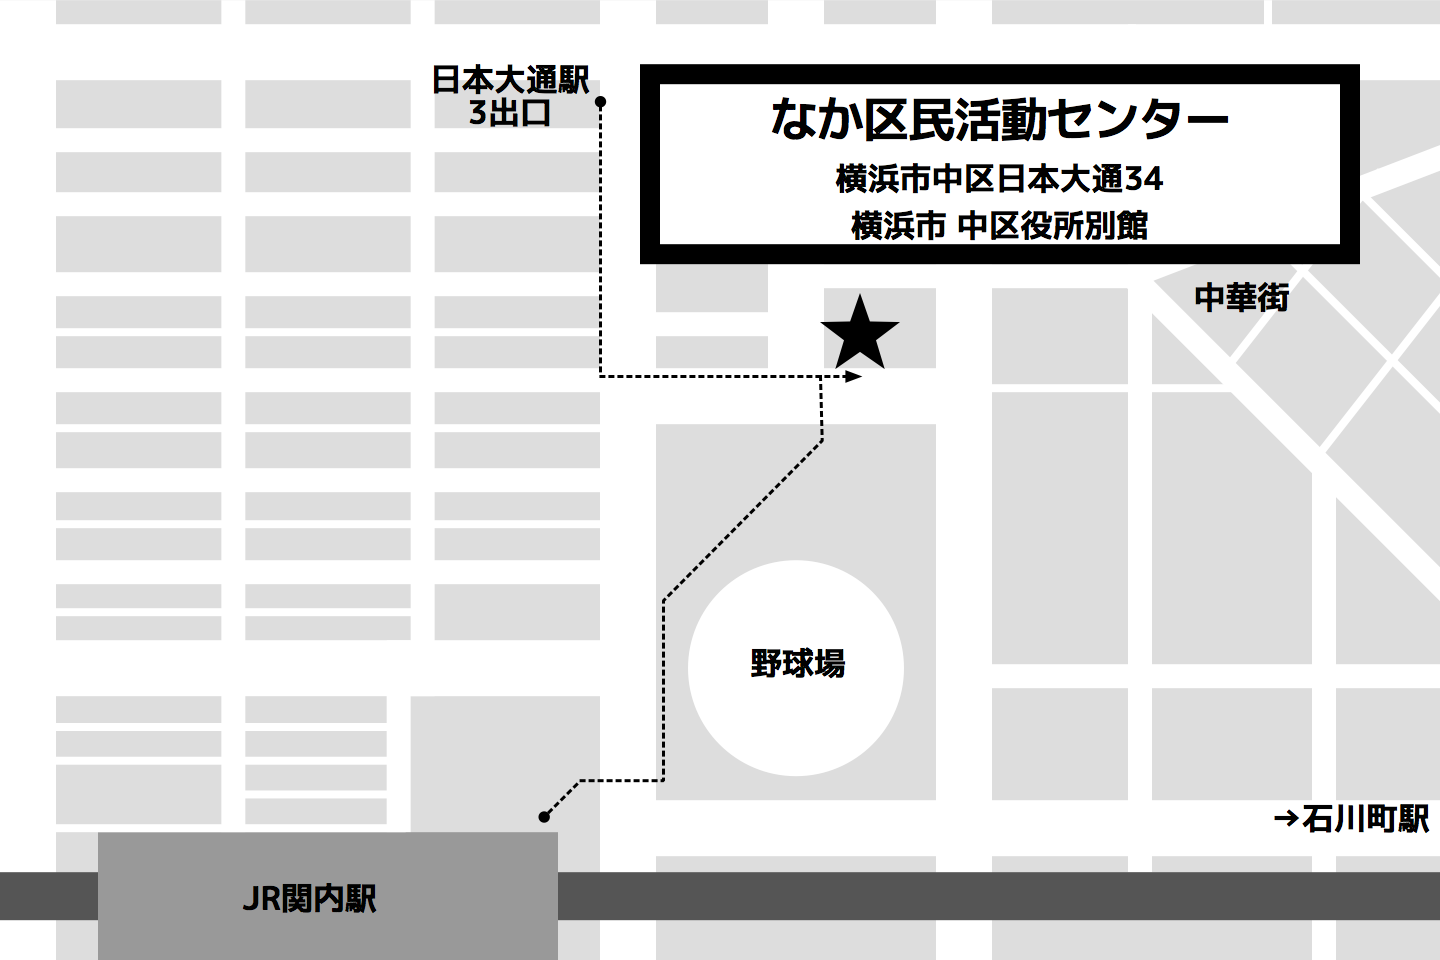 リマインド ゲームui Ux勉強会特別編 ゲームに学ぶuxデザイン 1 24横浜 は予定通り開催いたします Ux Yokohama Uxを学ぶ 横浜人のためのit勉強会コミュニティ